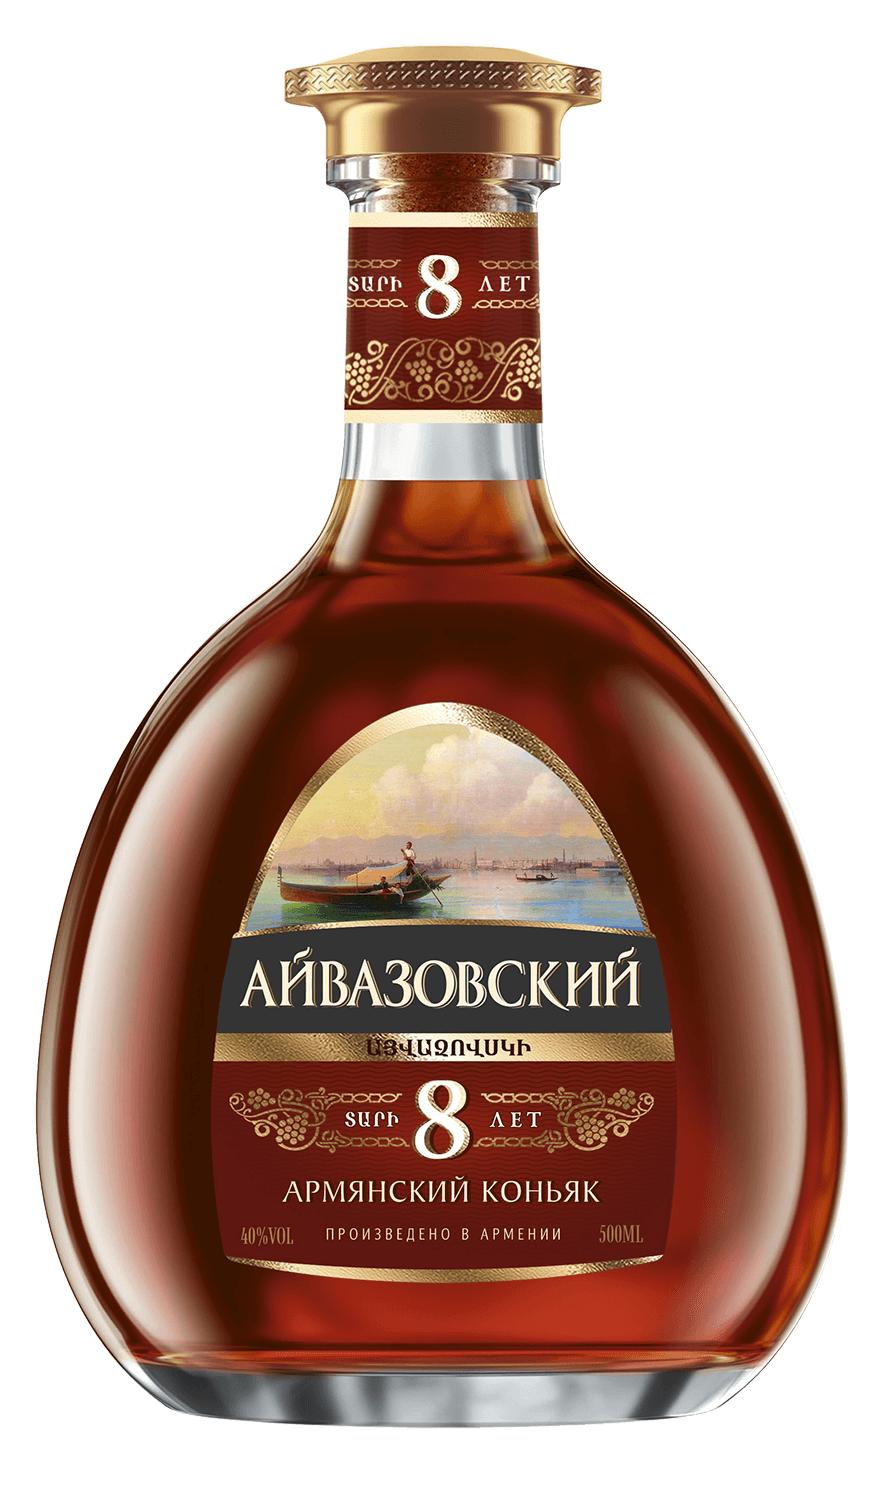 aivazovsky armenian brandy 5 y o Aivazovsky Armenian Brandy 8 Y.O. (gift box)